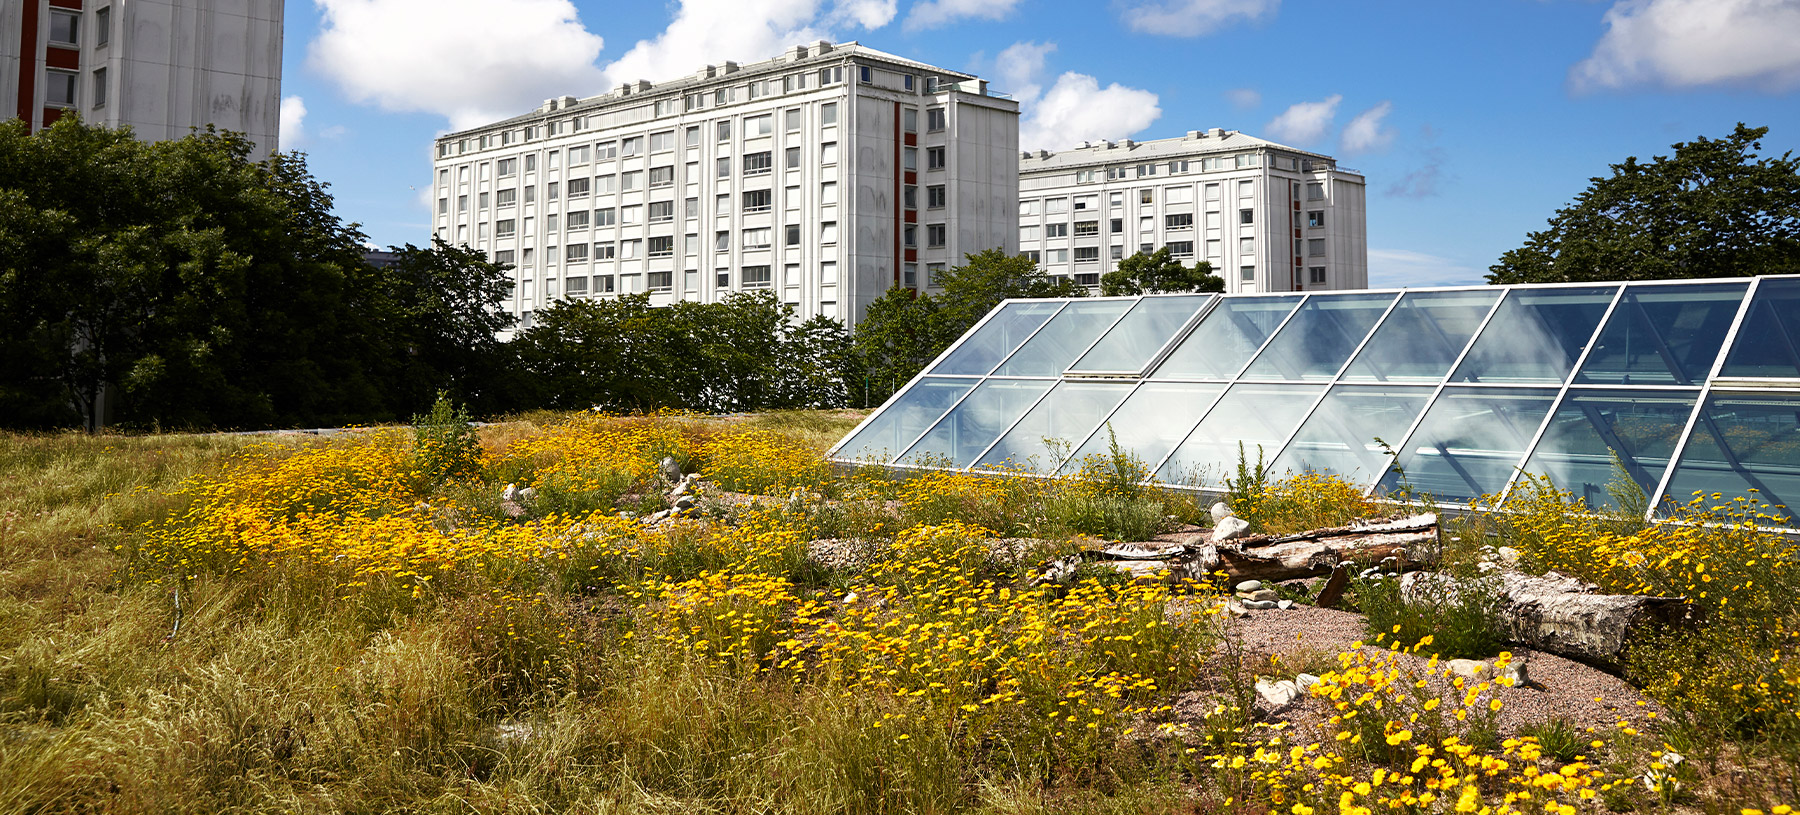 Frölunda Kulturhus gröna tak och takfönster i glas.